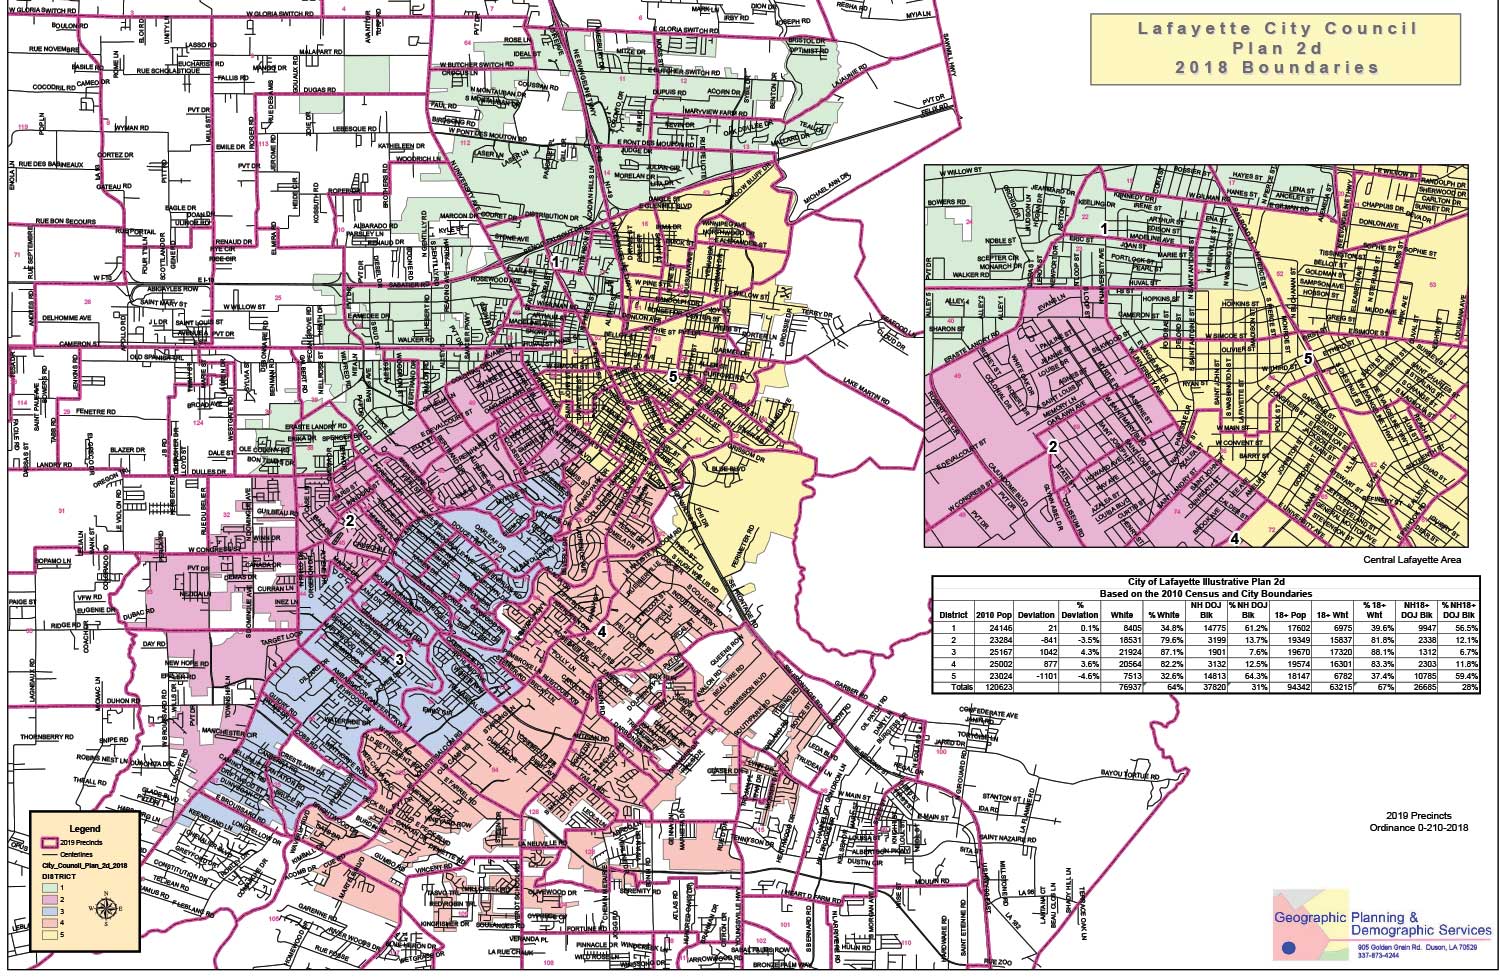 2019 Lafayette City Council Map